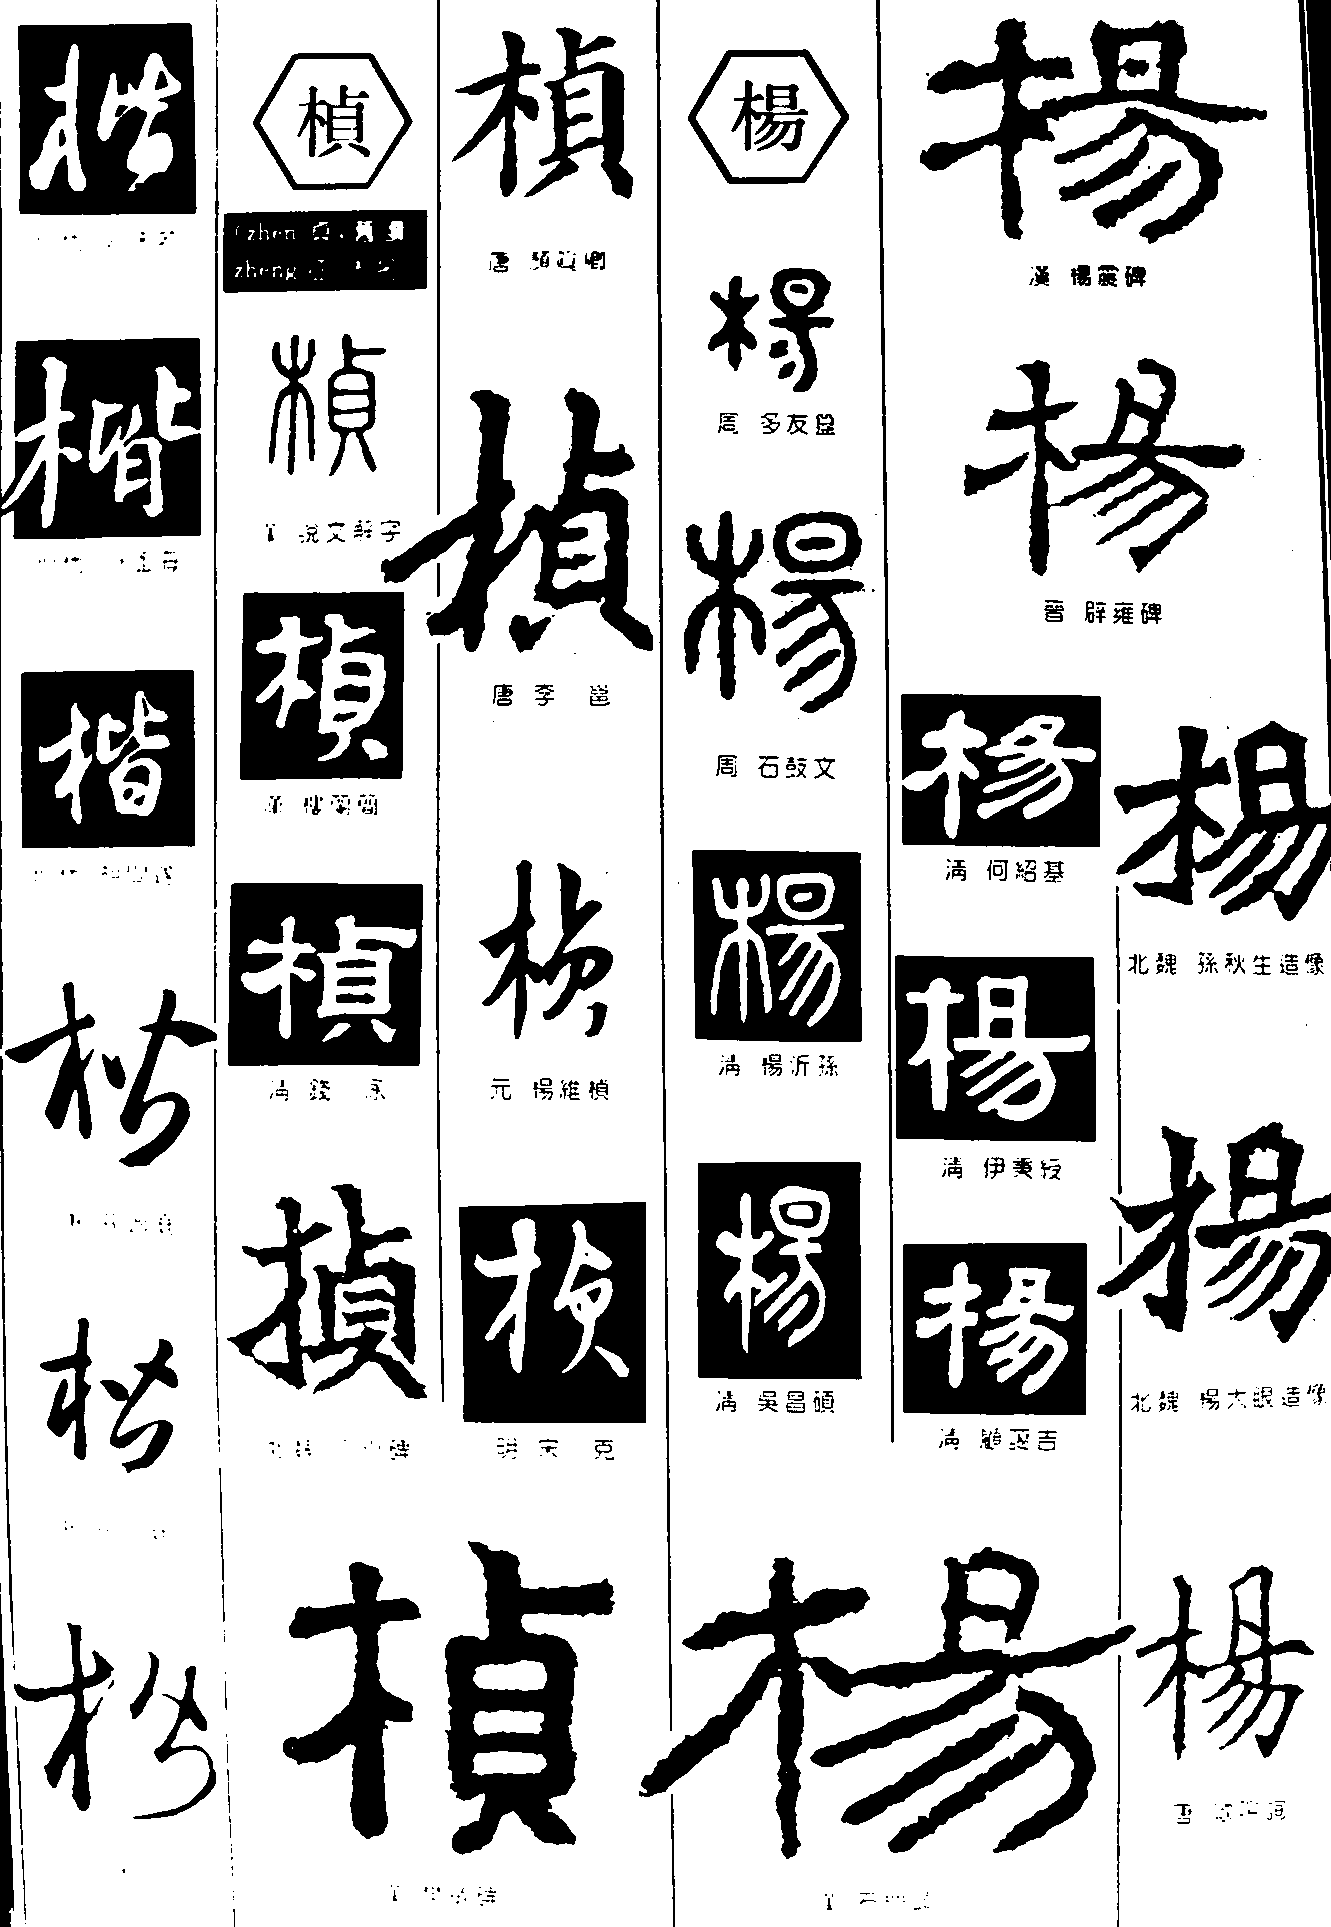 林_书法字体_字体设计作品-中国字体设计网_ziti.cndesign.com